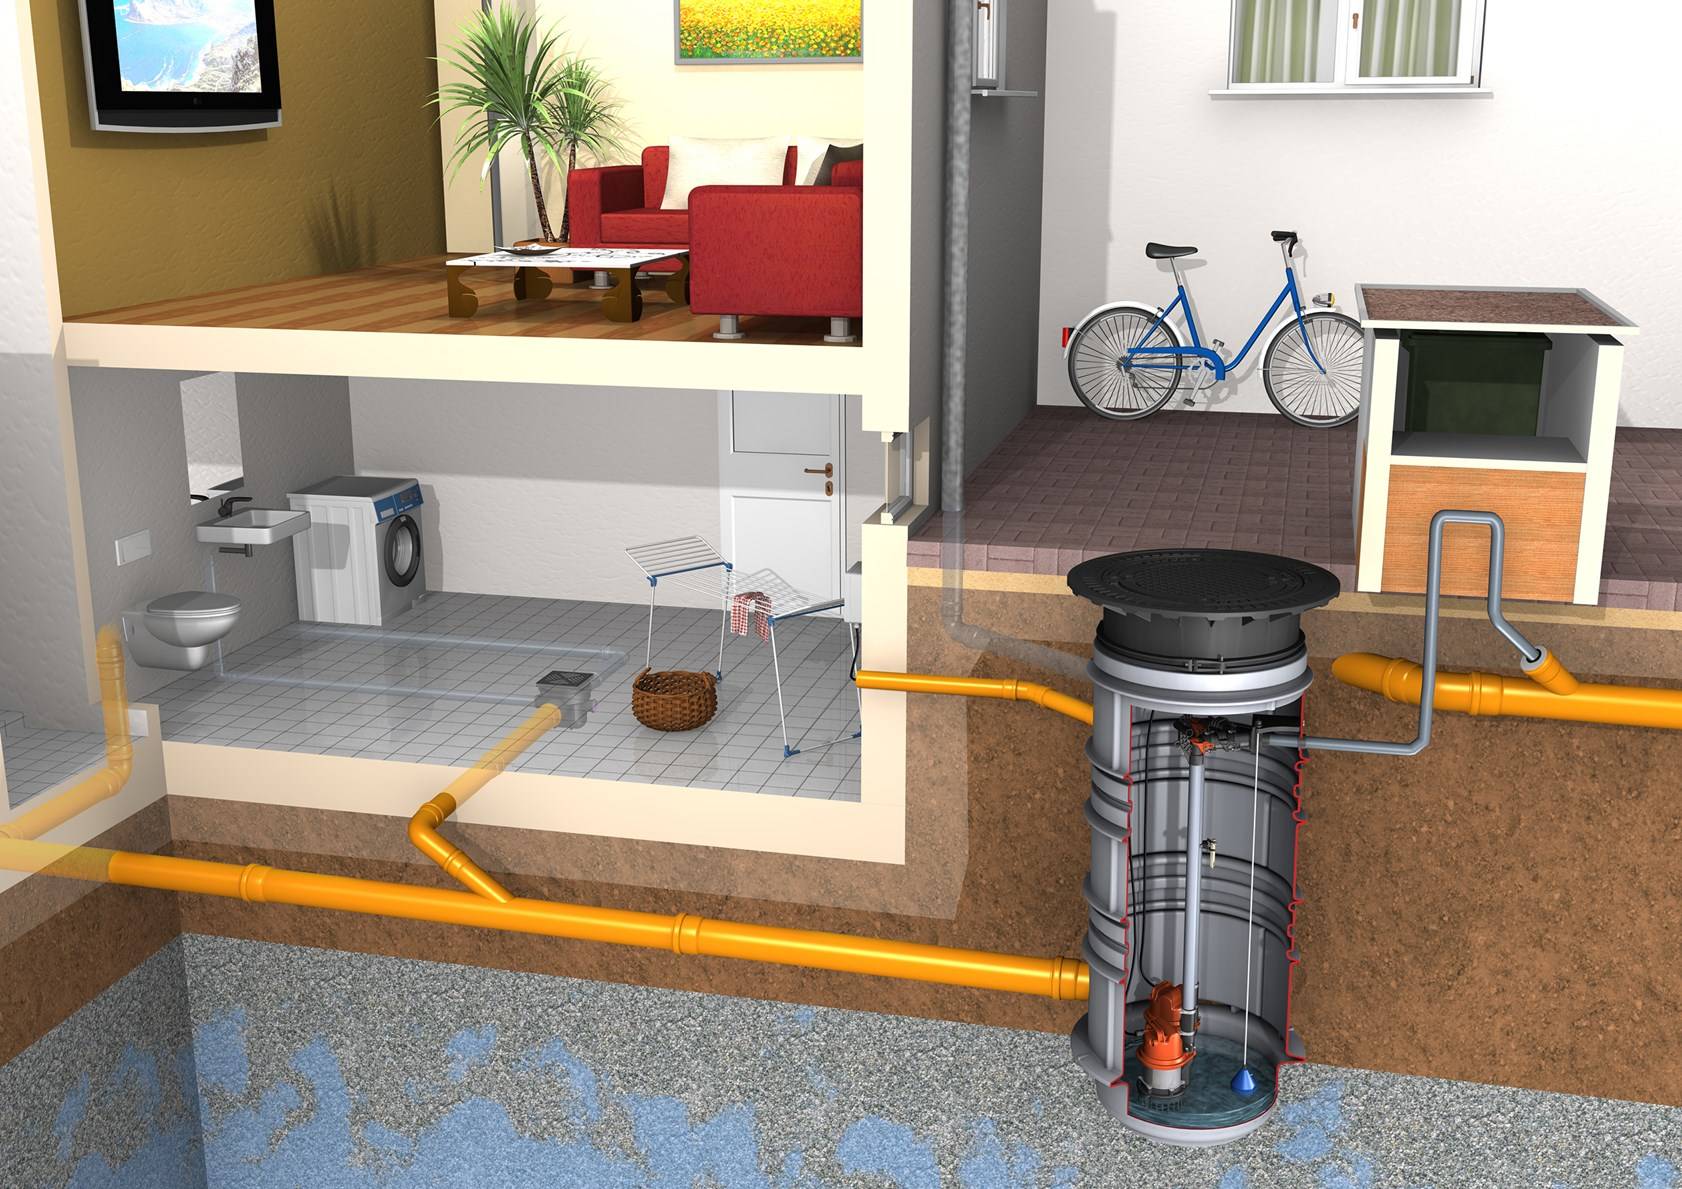 Канализационные насосные станции: установка бытовых кнс для частного дома, комплектная канализация для сточных вод